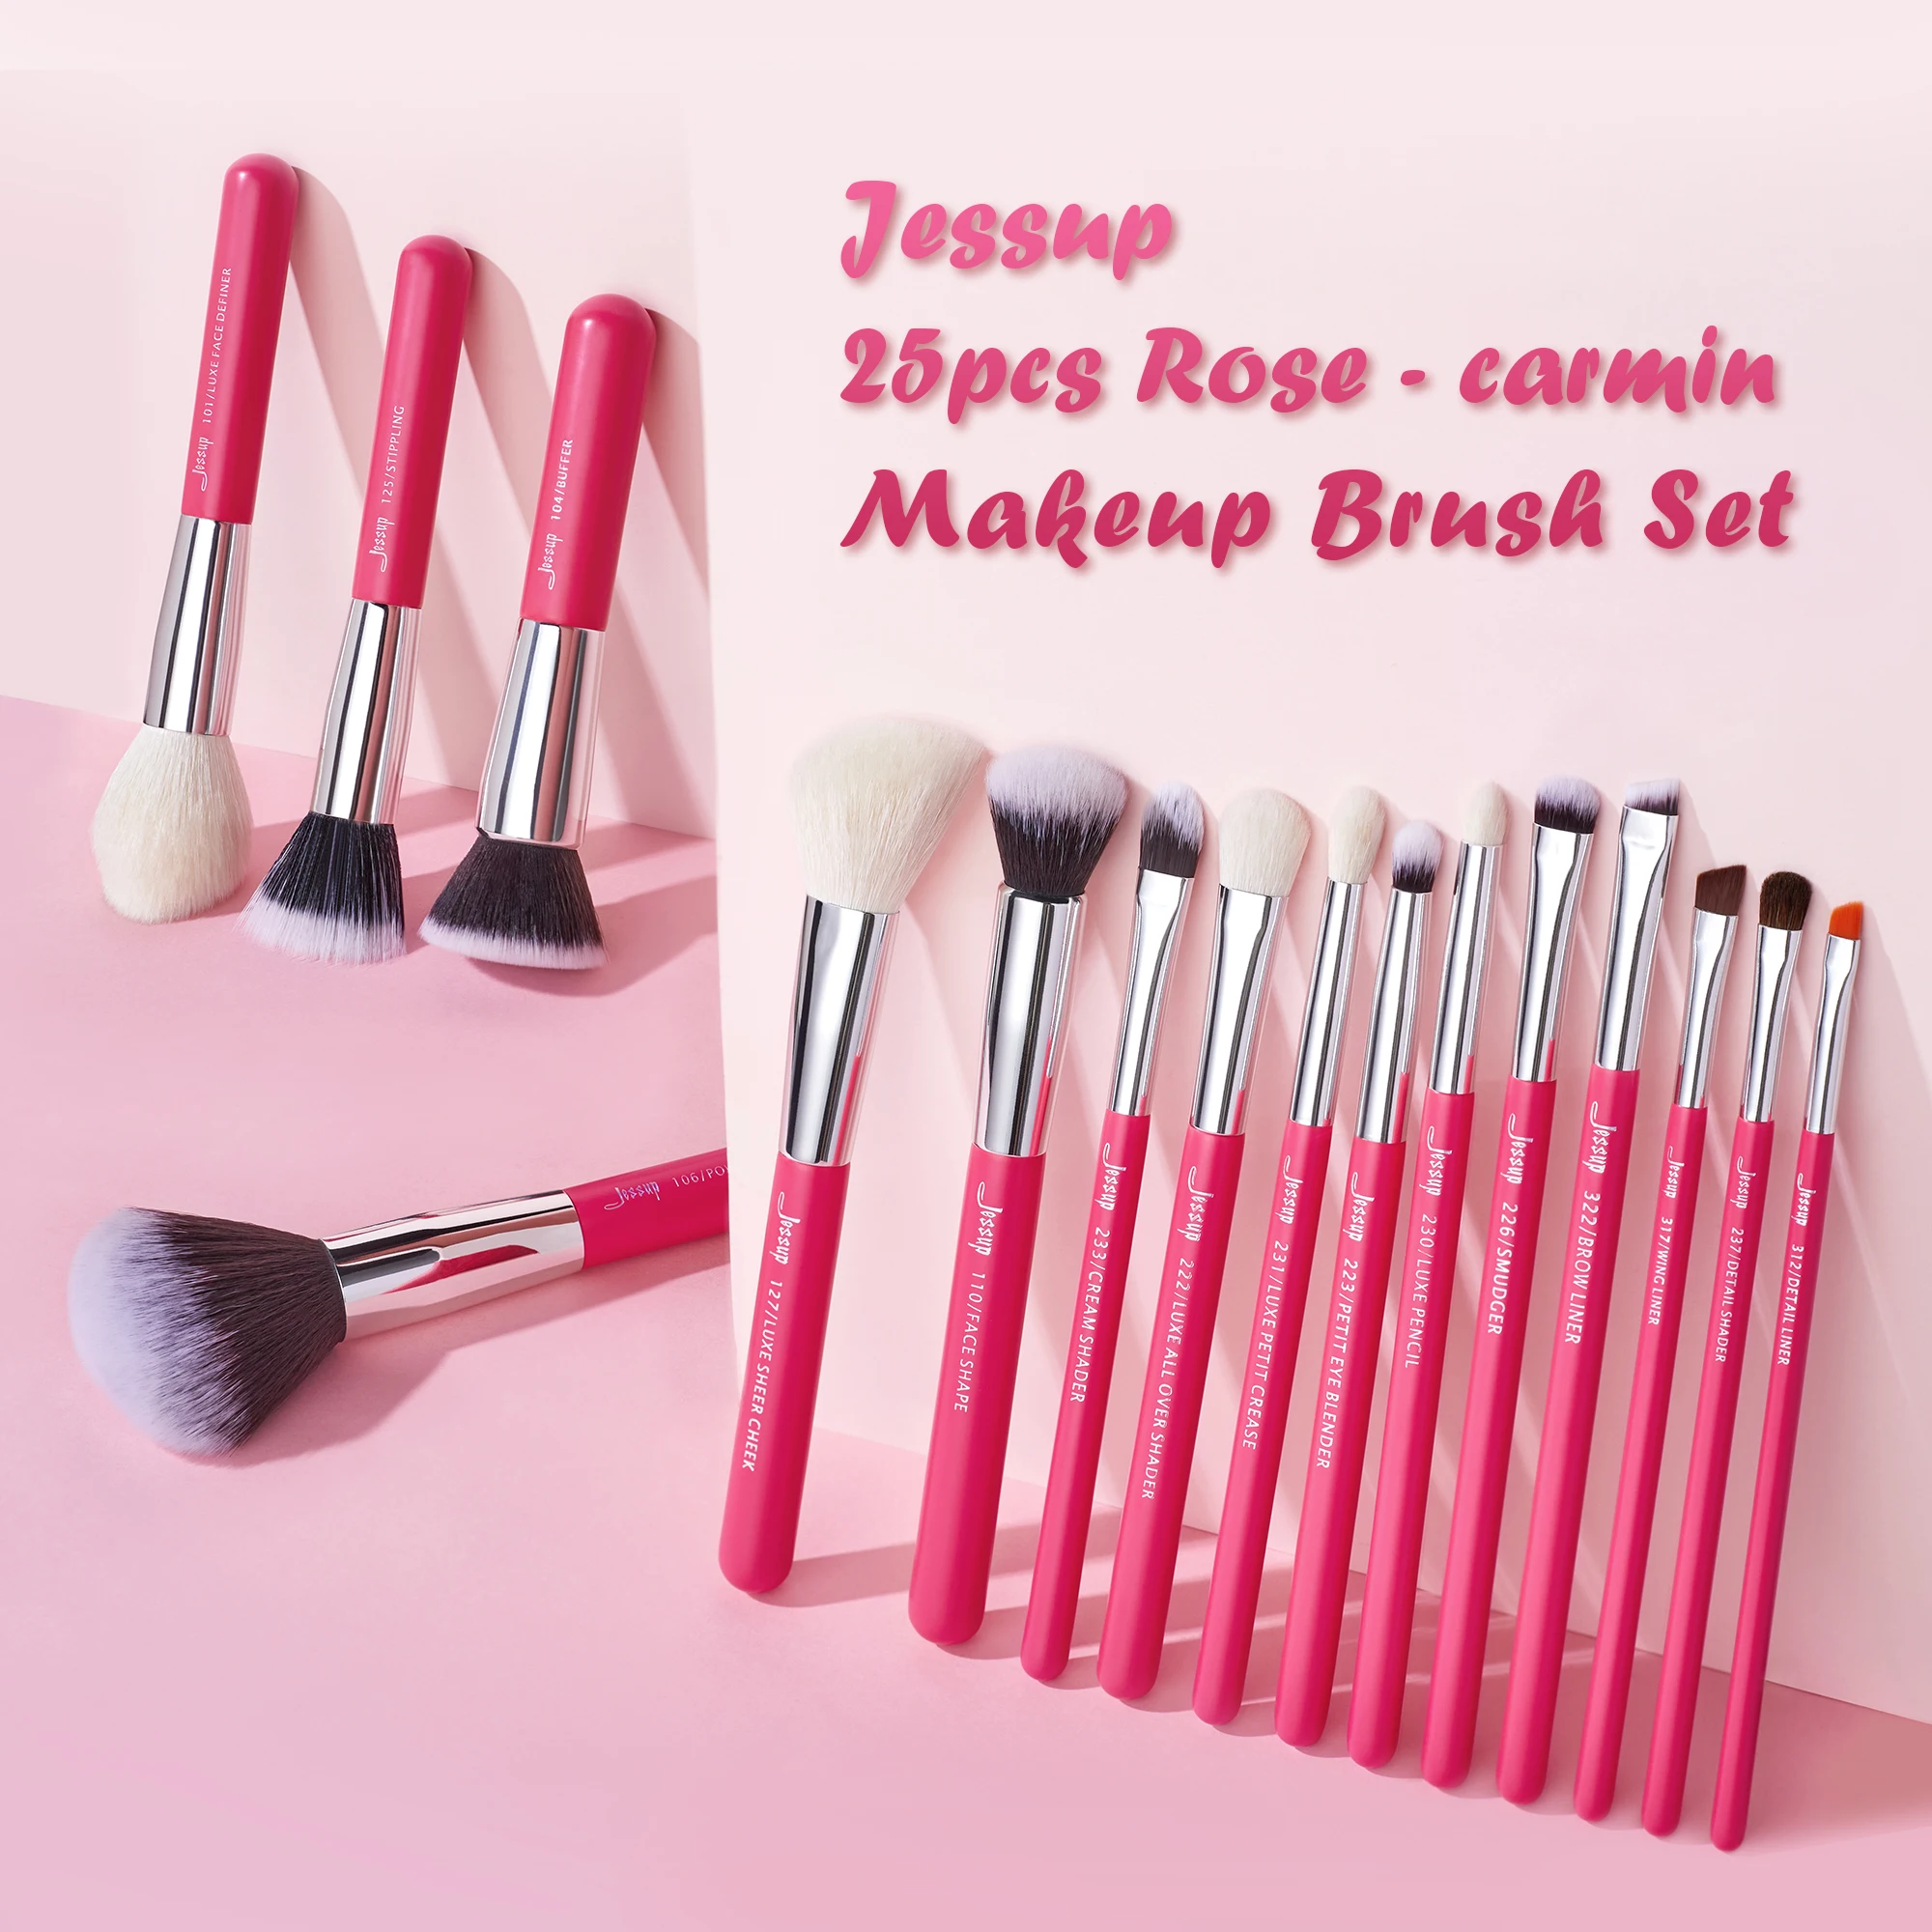 Jessup Pro pennelli per trucco Set fondotinta in polvere ombretto Eyeliner  Blending Lip Make Up Brush strumenti per cosmetici di bellezza, 15 pezzi  T093 - AliExpress